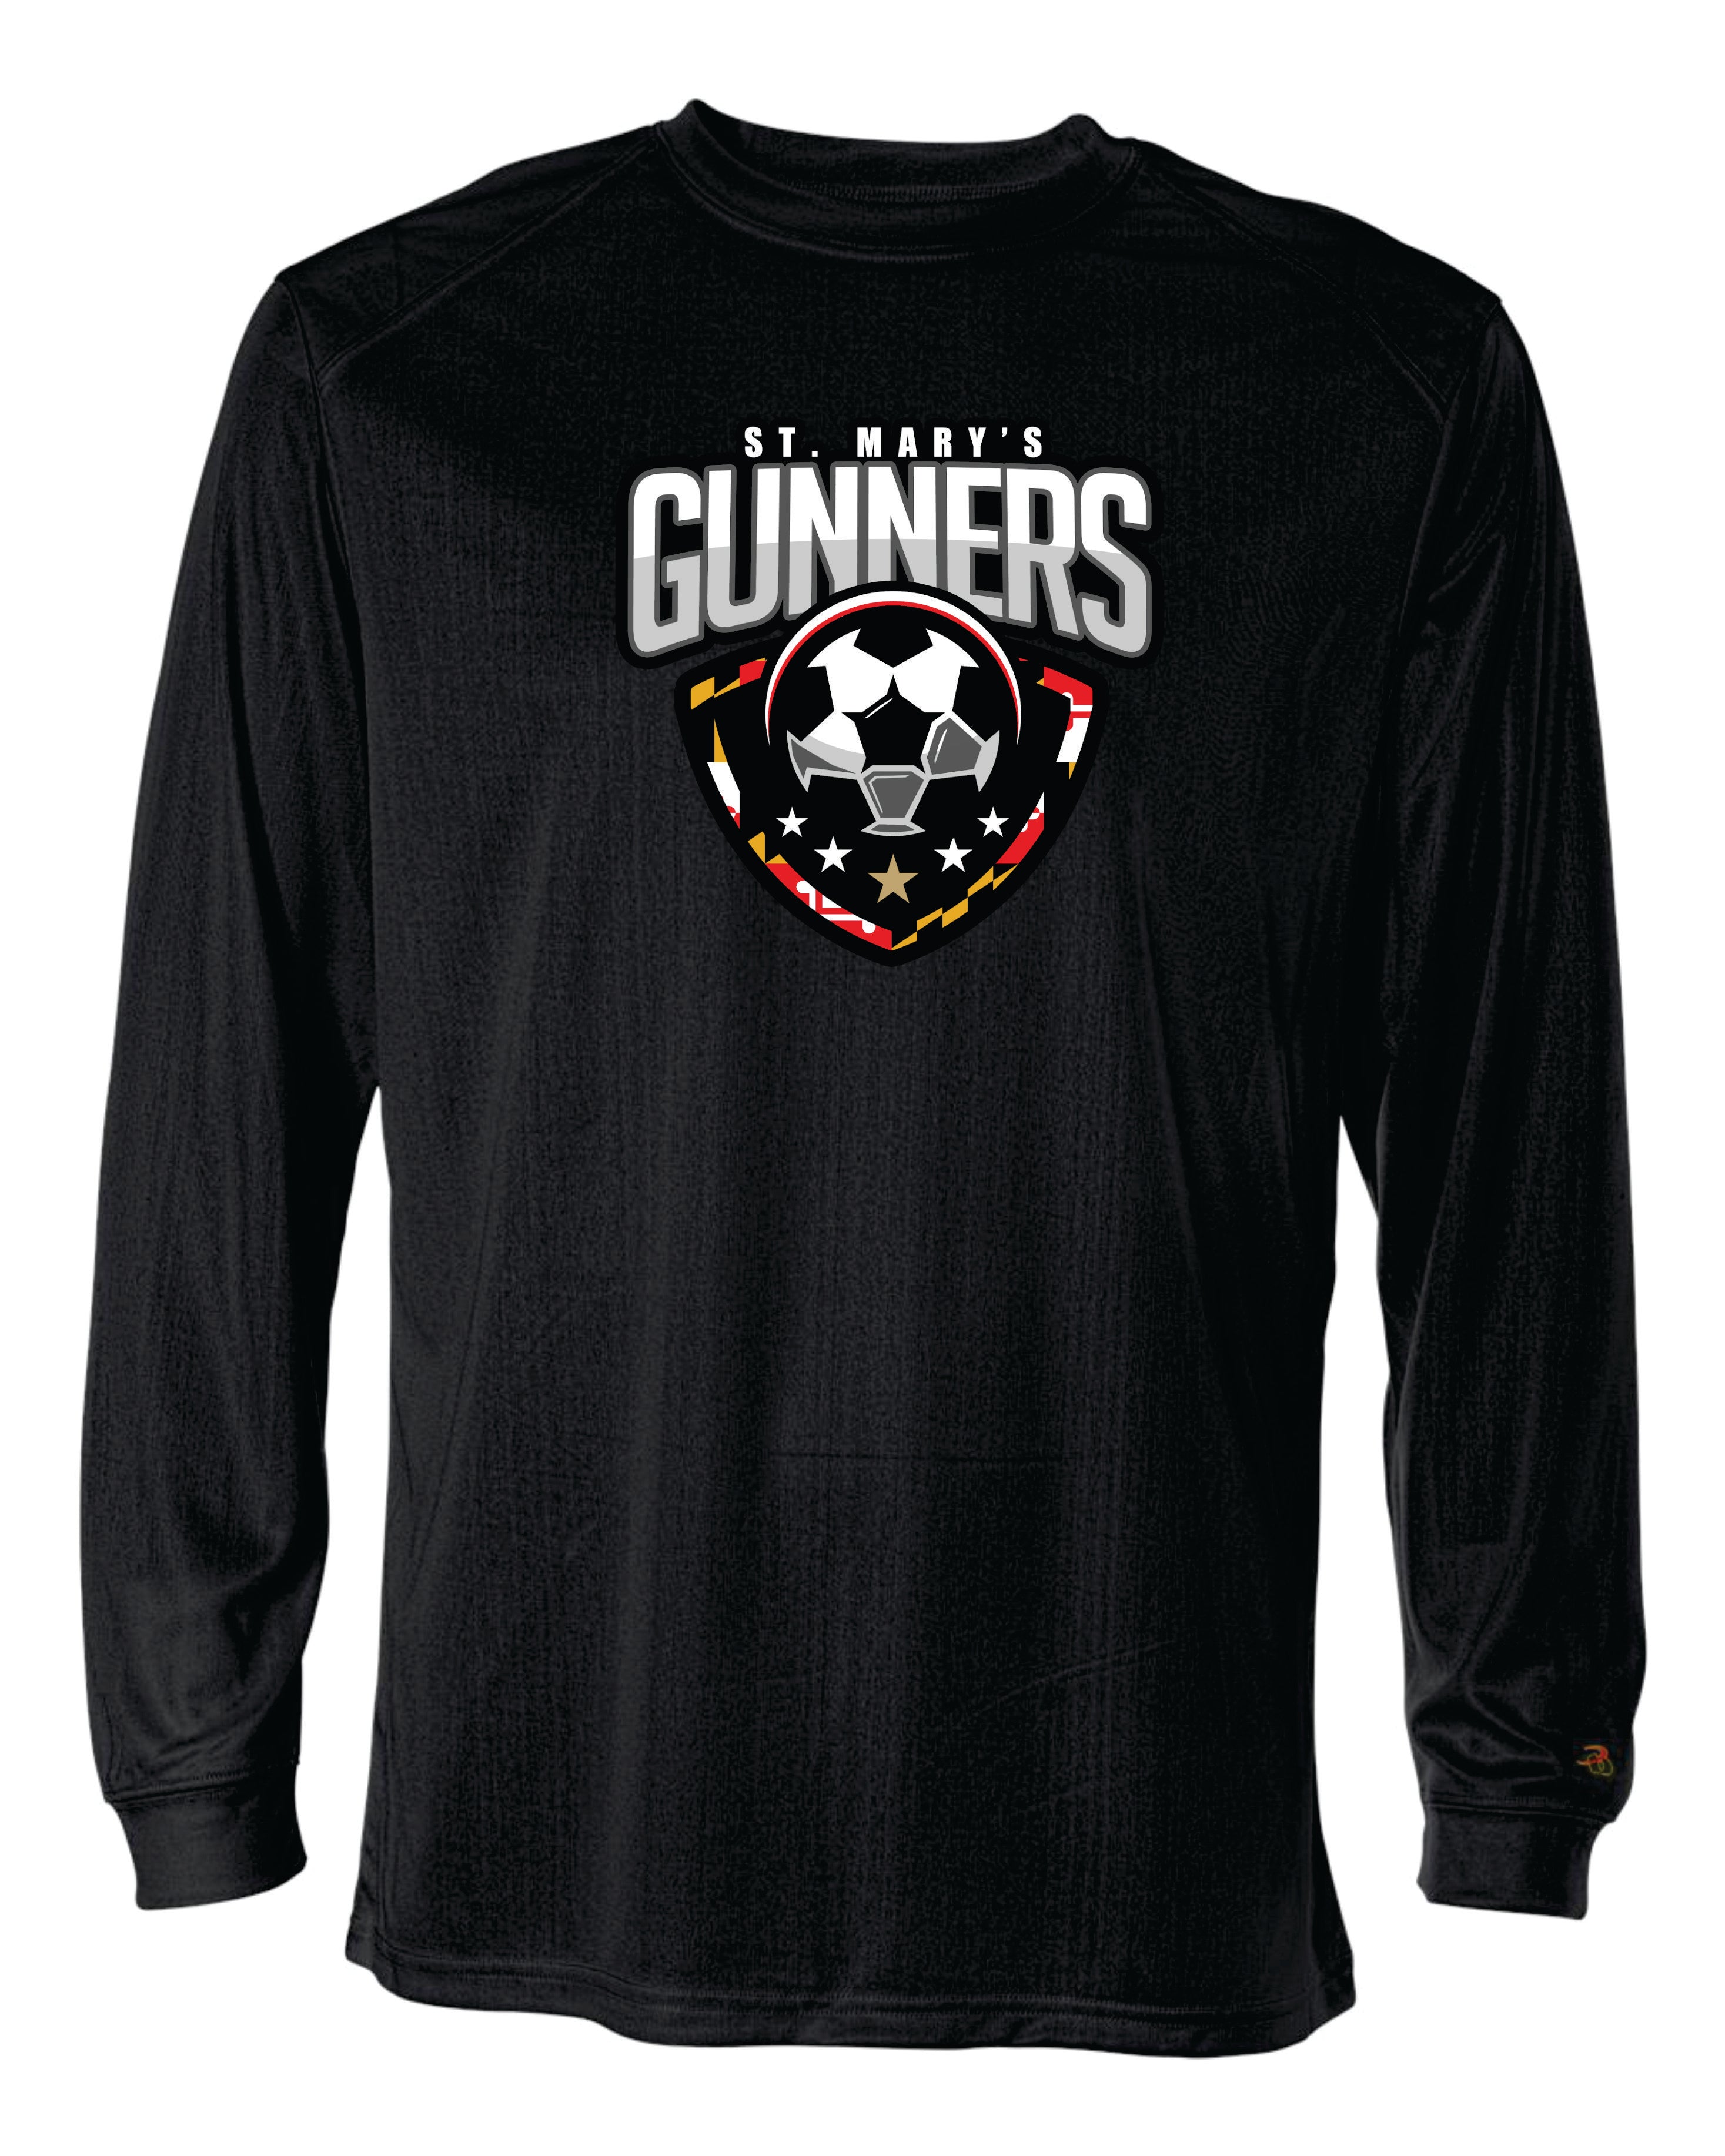 Gunners Long Sleeve Badger Dri Fit Shirt-WOMEN